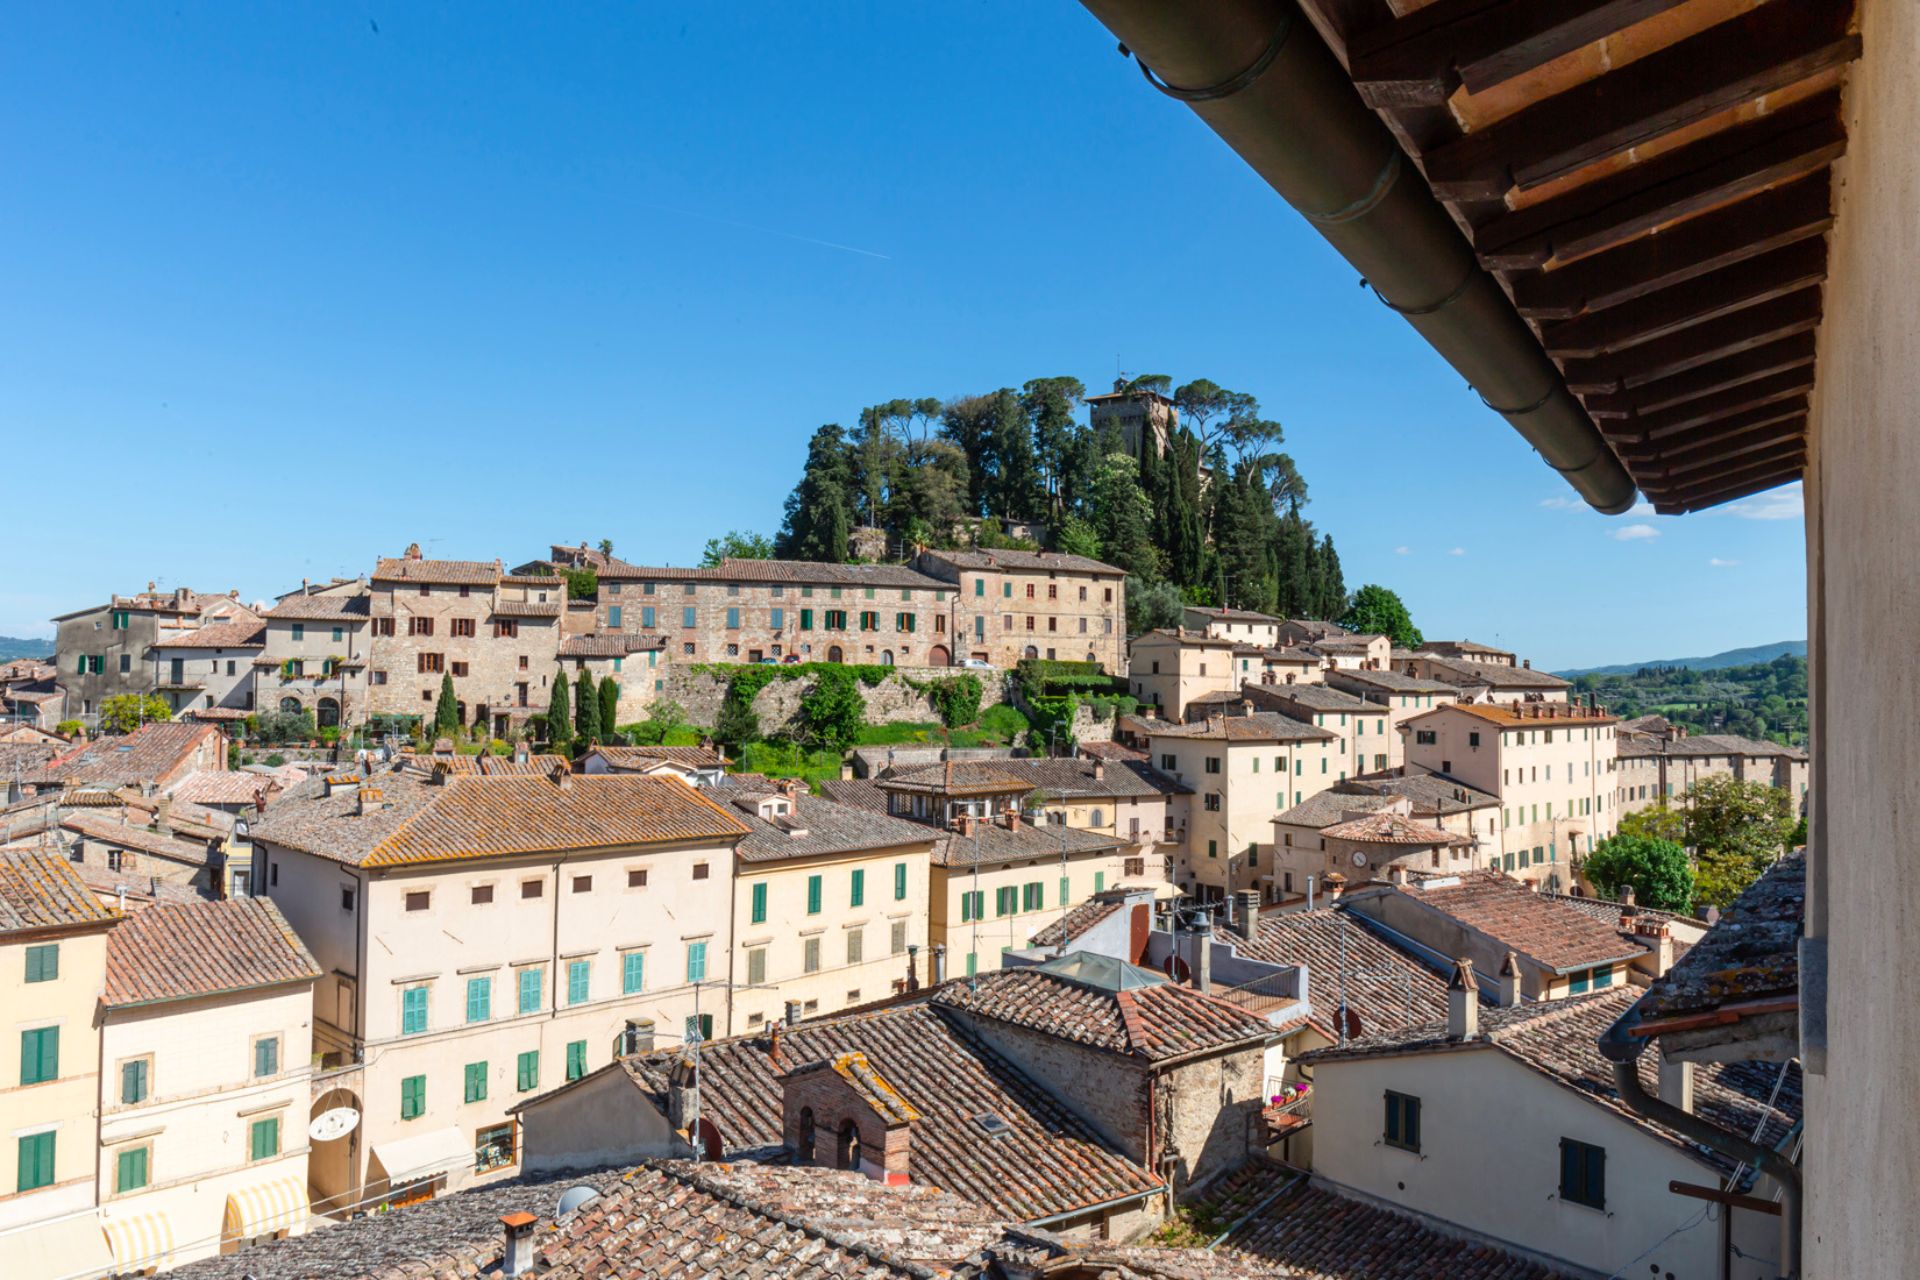 Passeggiando per i borghi della Toscana: lasciati ispirare da Great Estate